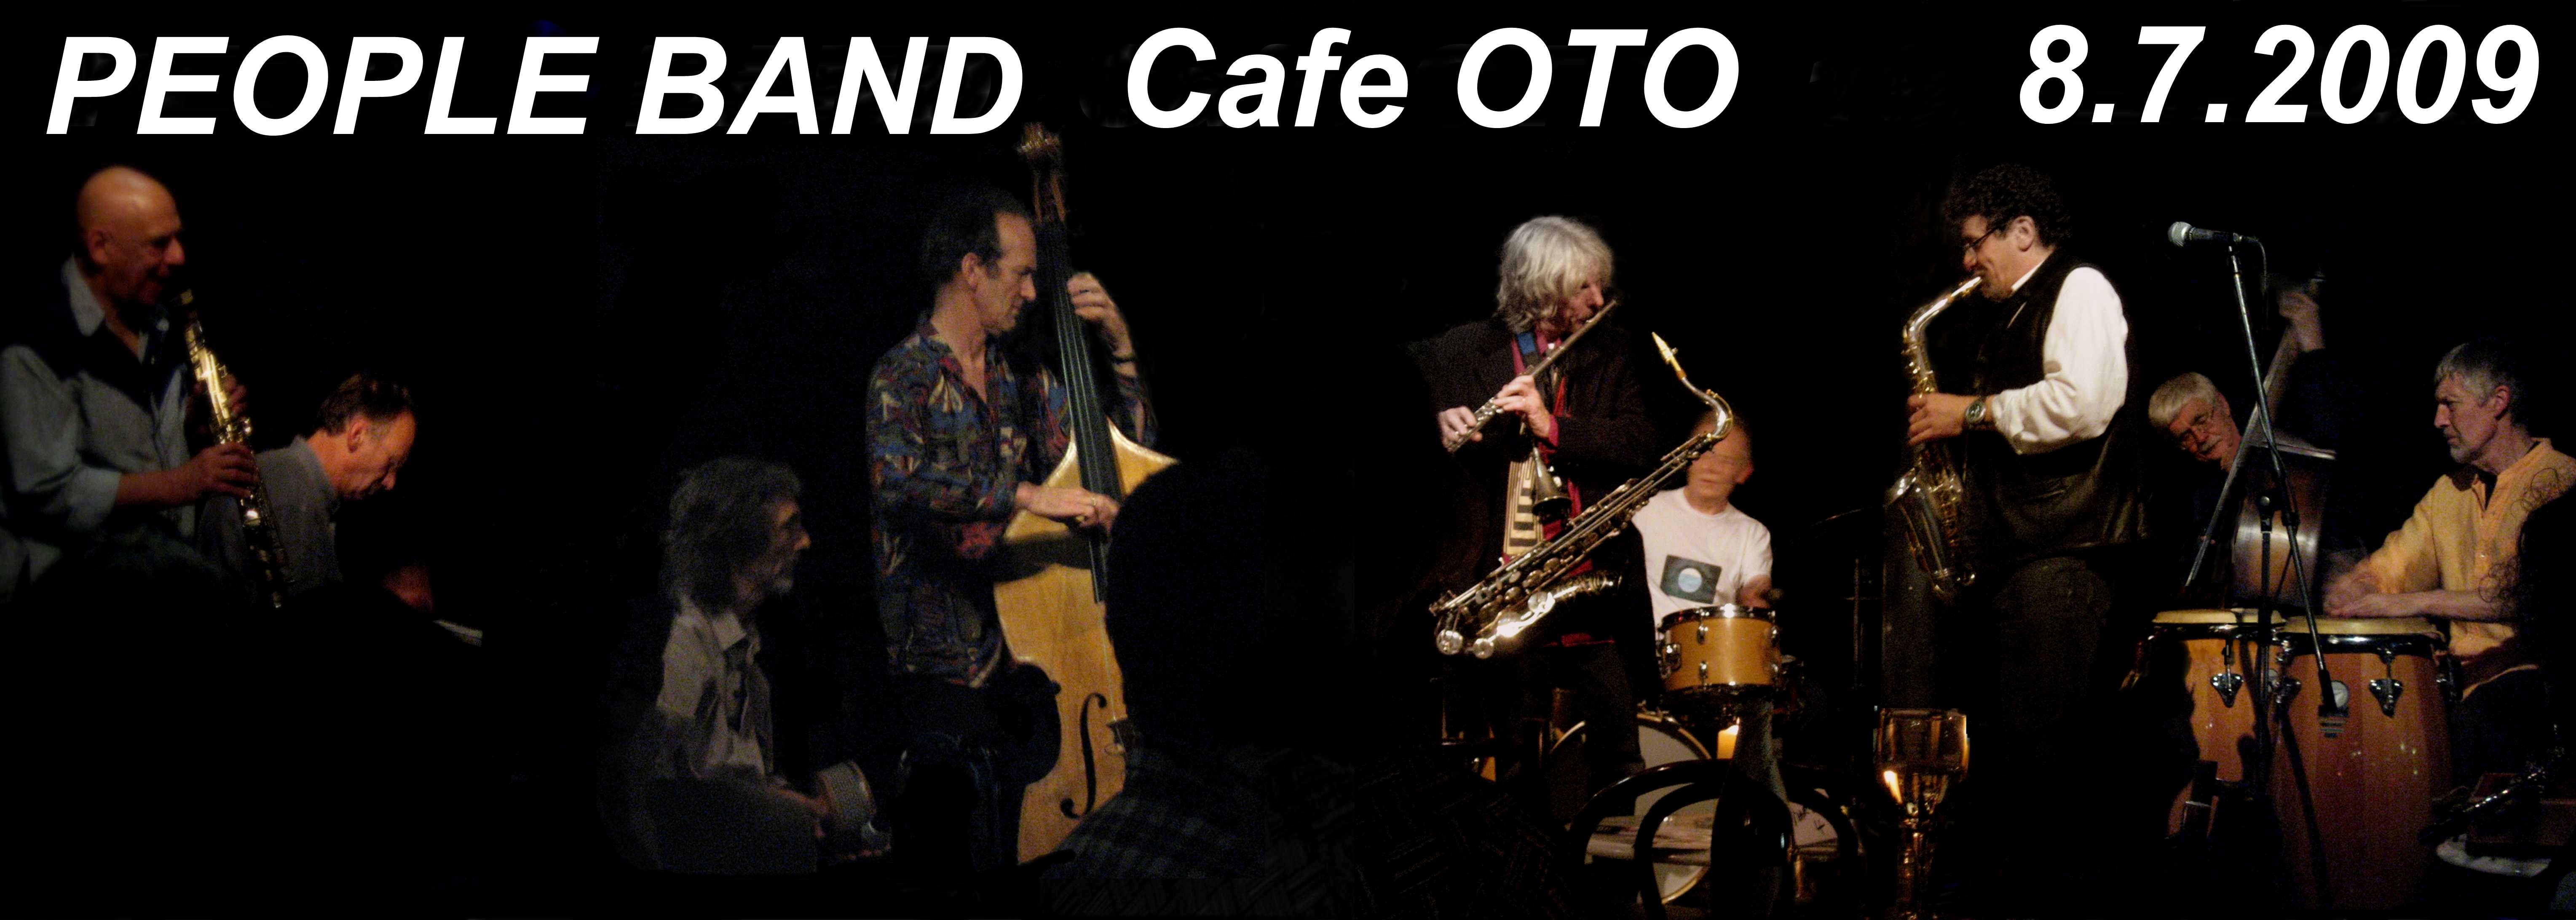 People Band cafe OTO 8.7.2009